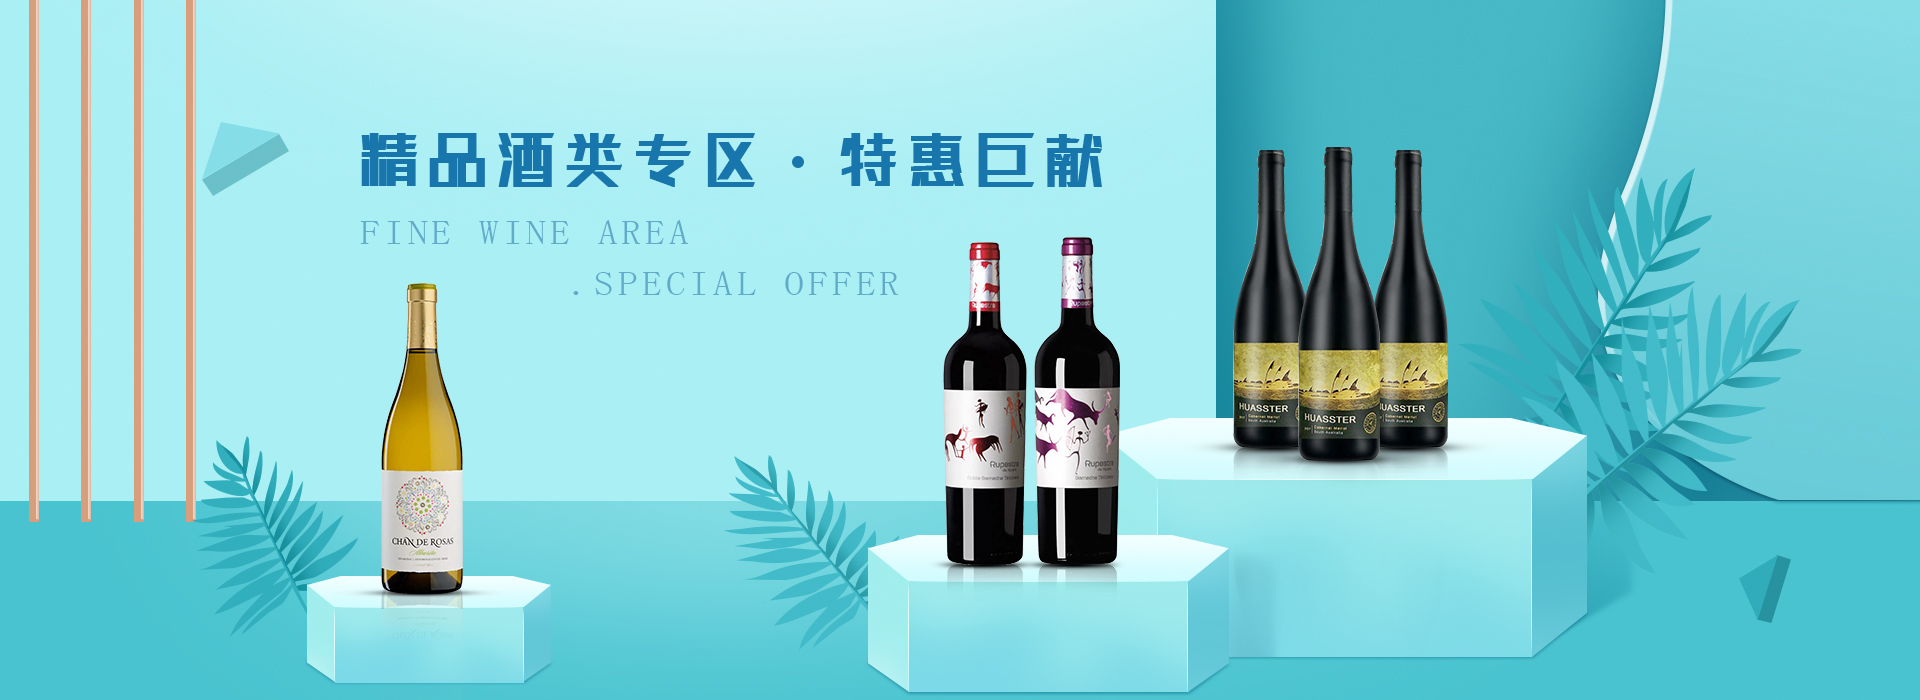 公司接待红酒团购价格-福莱沃酒业广州有限公司